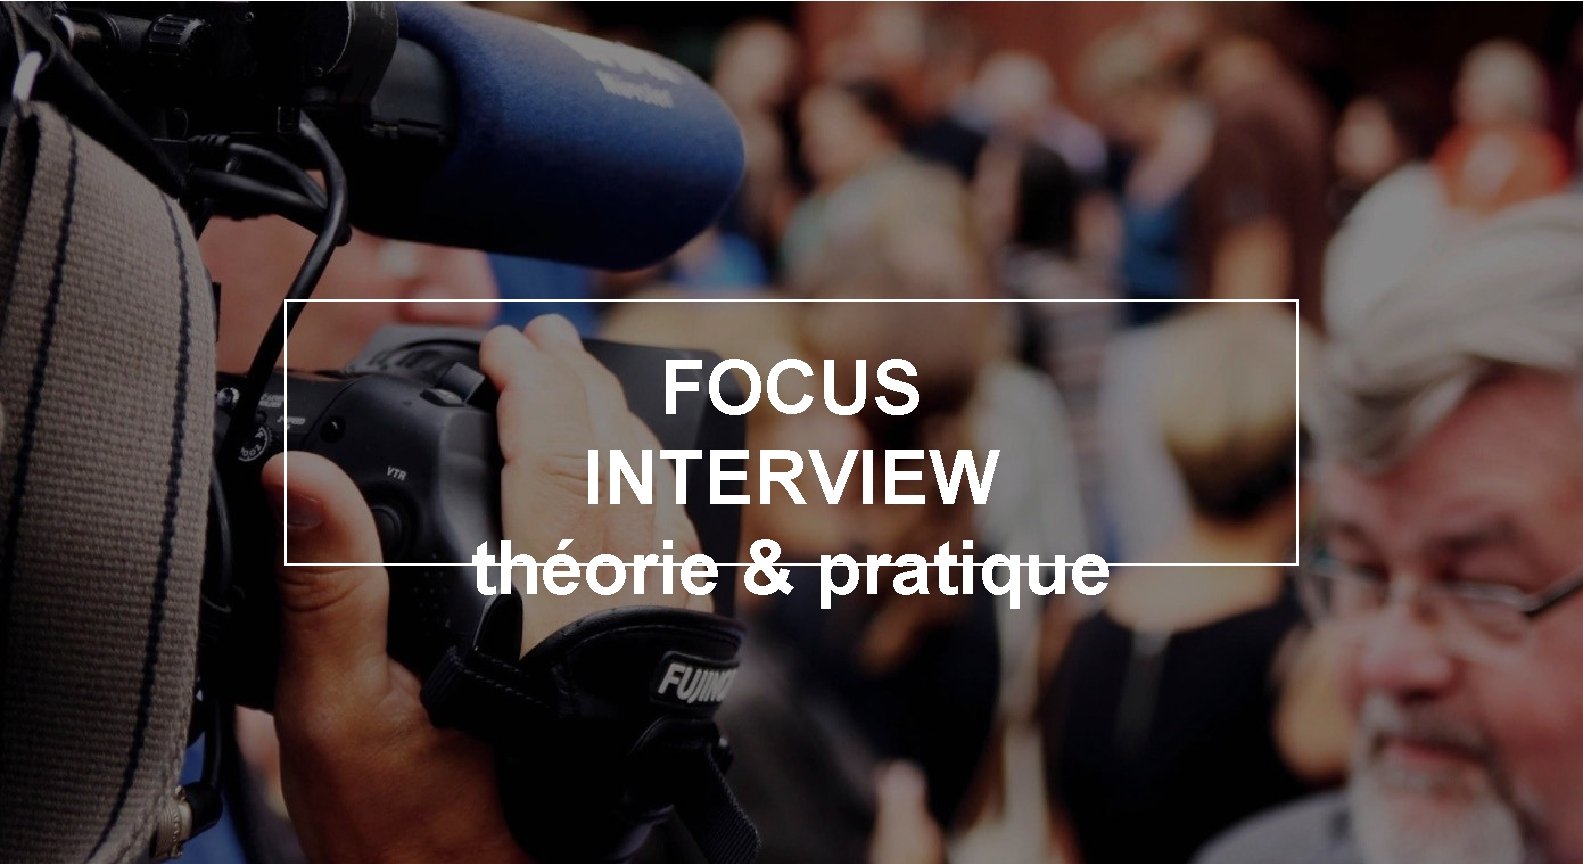 FOCUS INTERVIEW théorie & pratique 